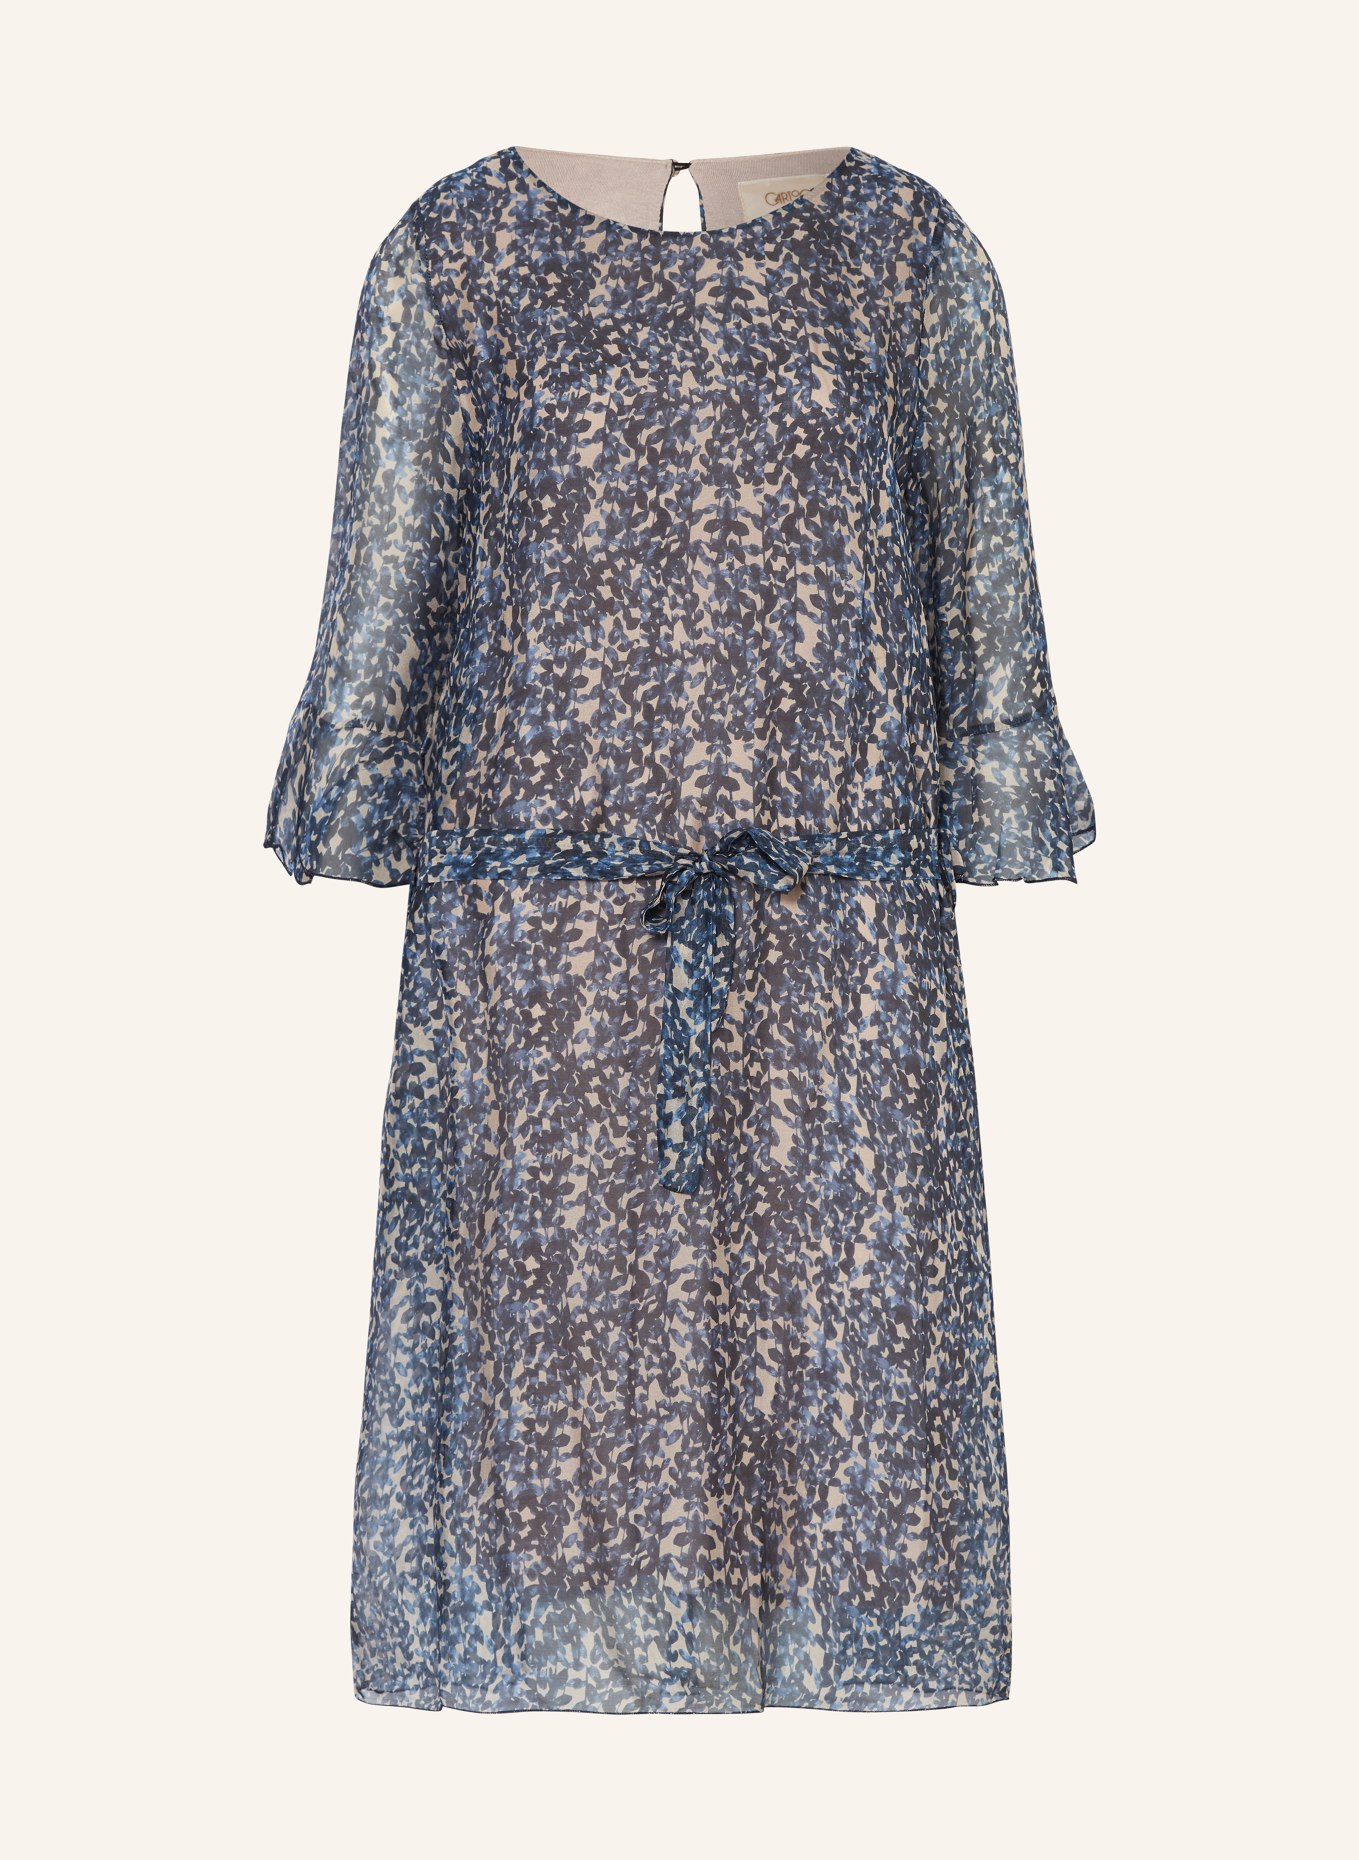 CARTOON Kleid mit 3/4-Arm und Volants, Farbe: BEIGE/ BLAU (Bild 1)